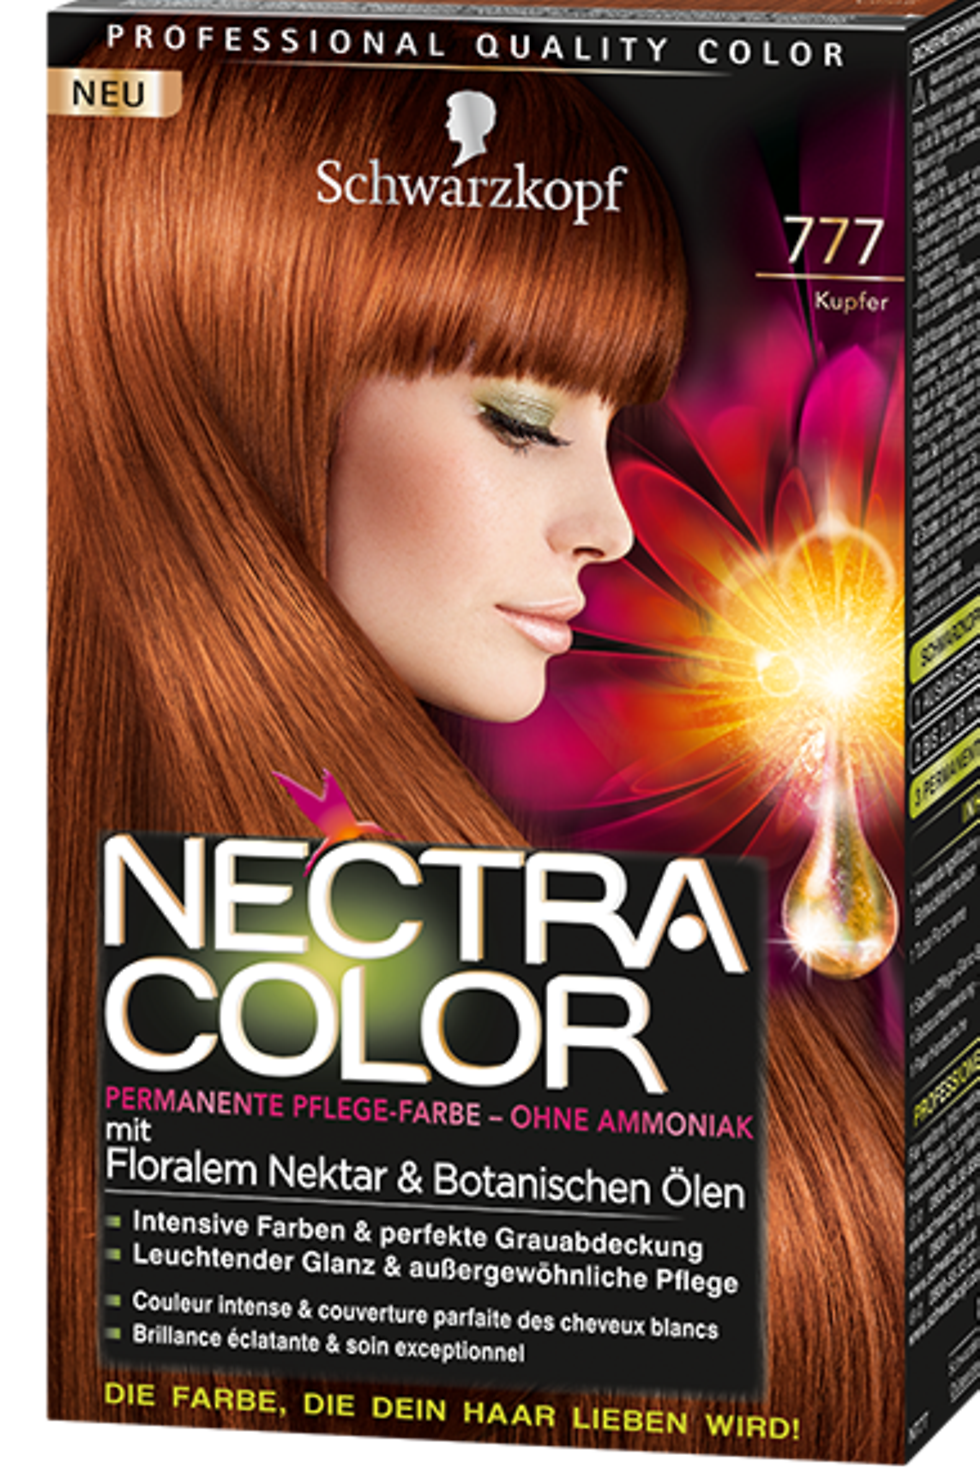 Nectra Color 777 Kupfer